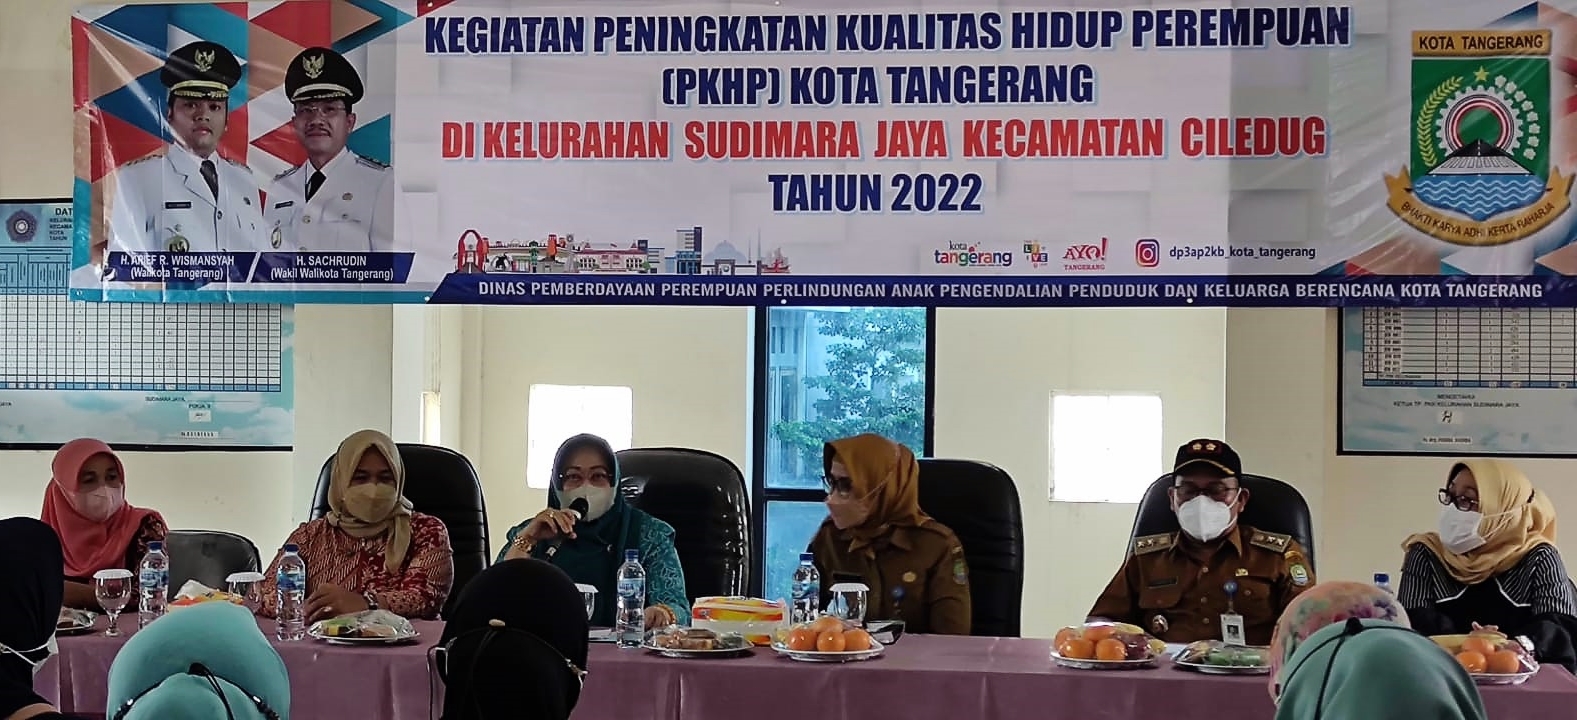 Kegiatan Peningkatan Kualitas Hidup Perempuan (PKHP) Kota Tangerang di Aula Kelurahan Sudimara Jaya